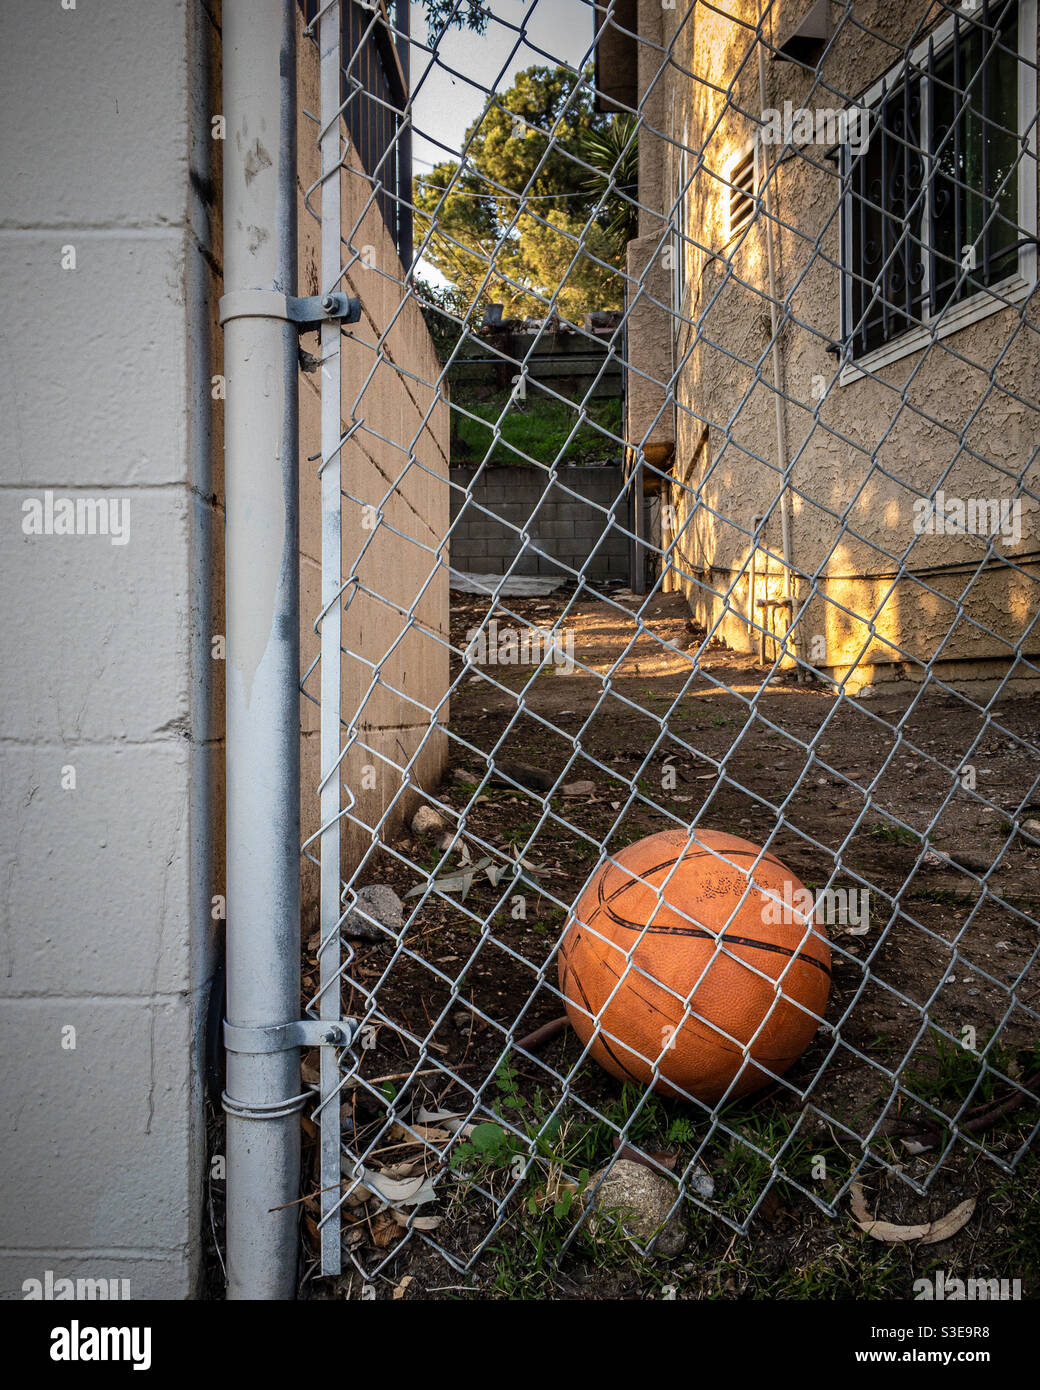 Basketball im Hinterhof als Metapher für verlorene Kindheit Stockfoto